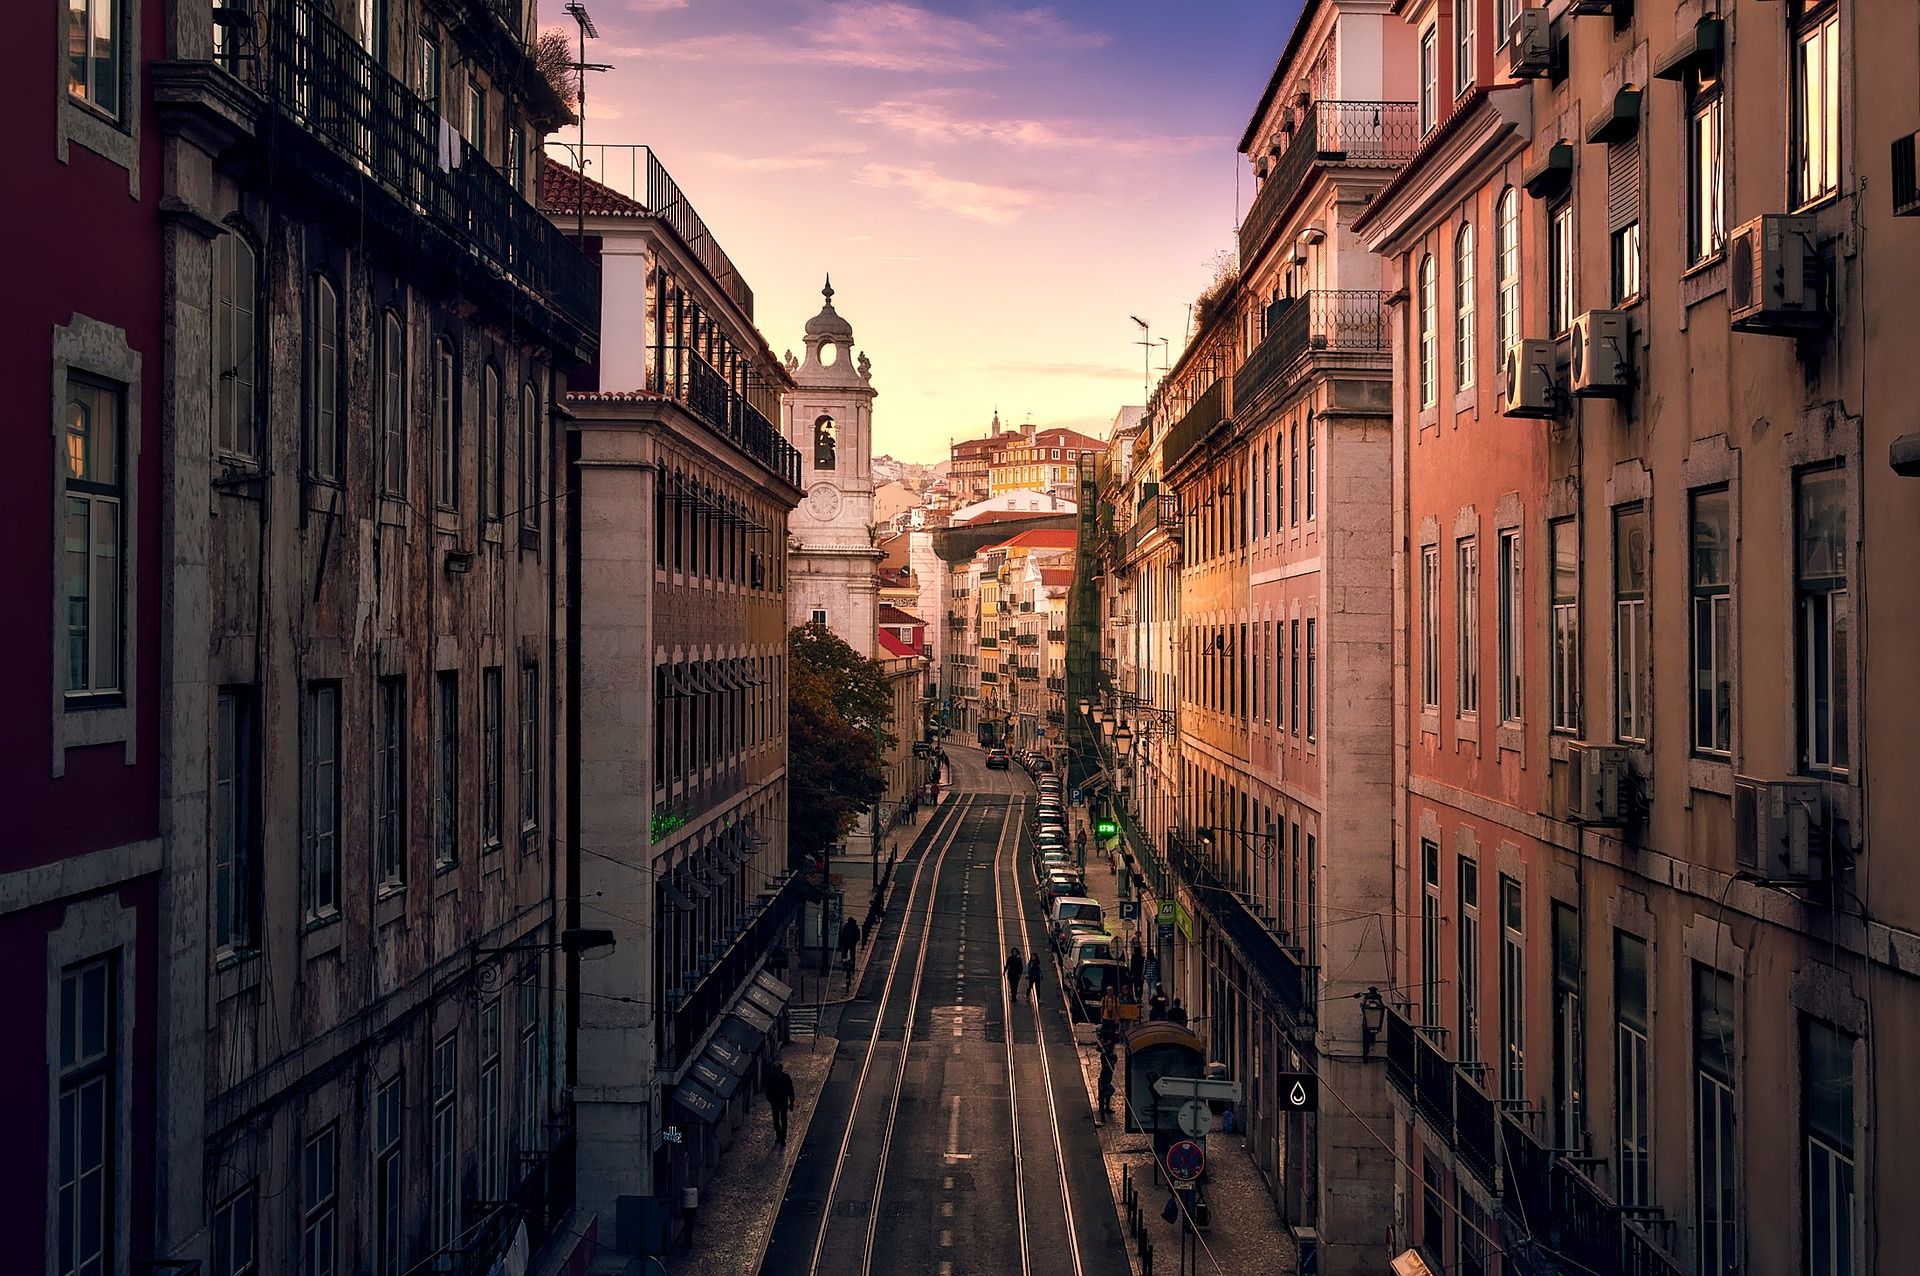 A street in Lisbon